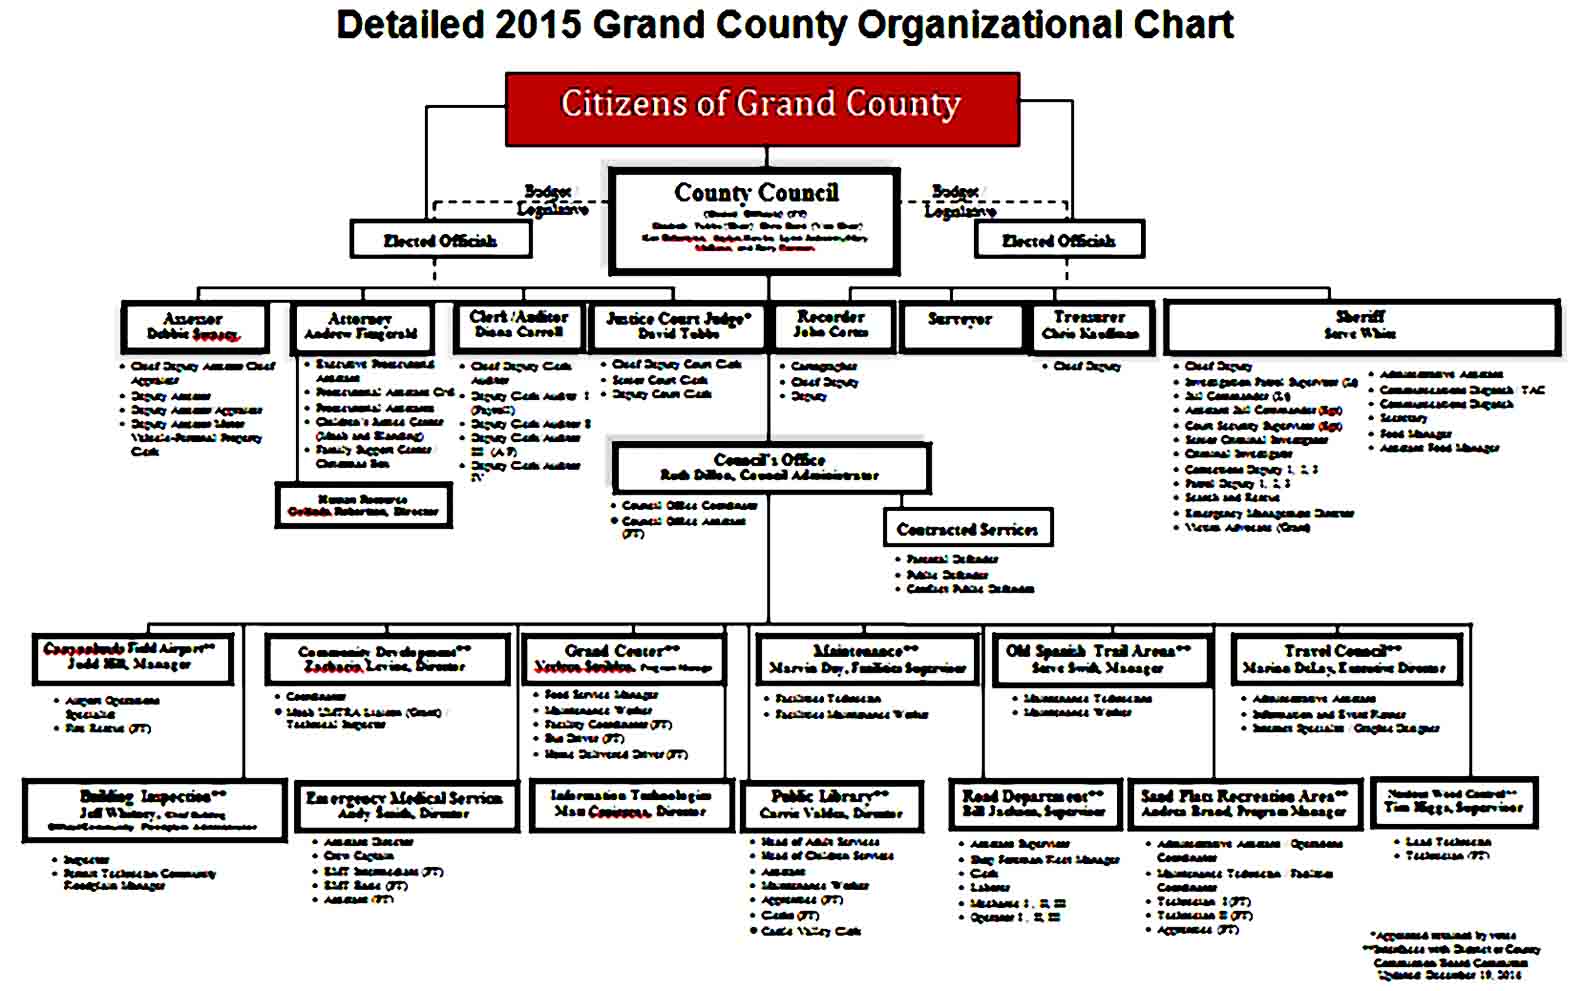 Organizational Chart 15